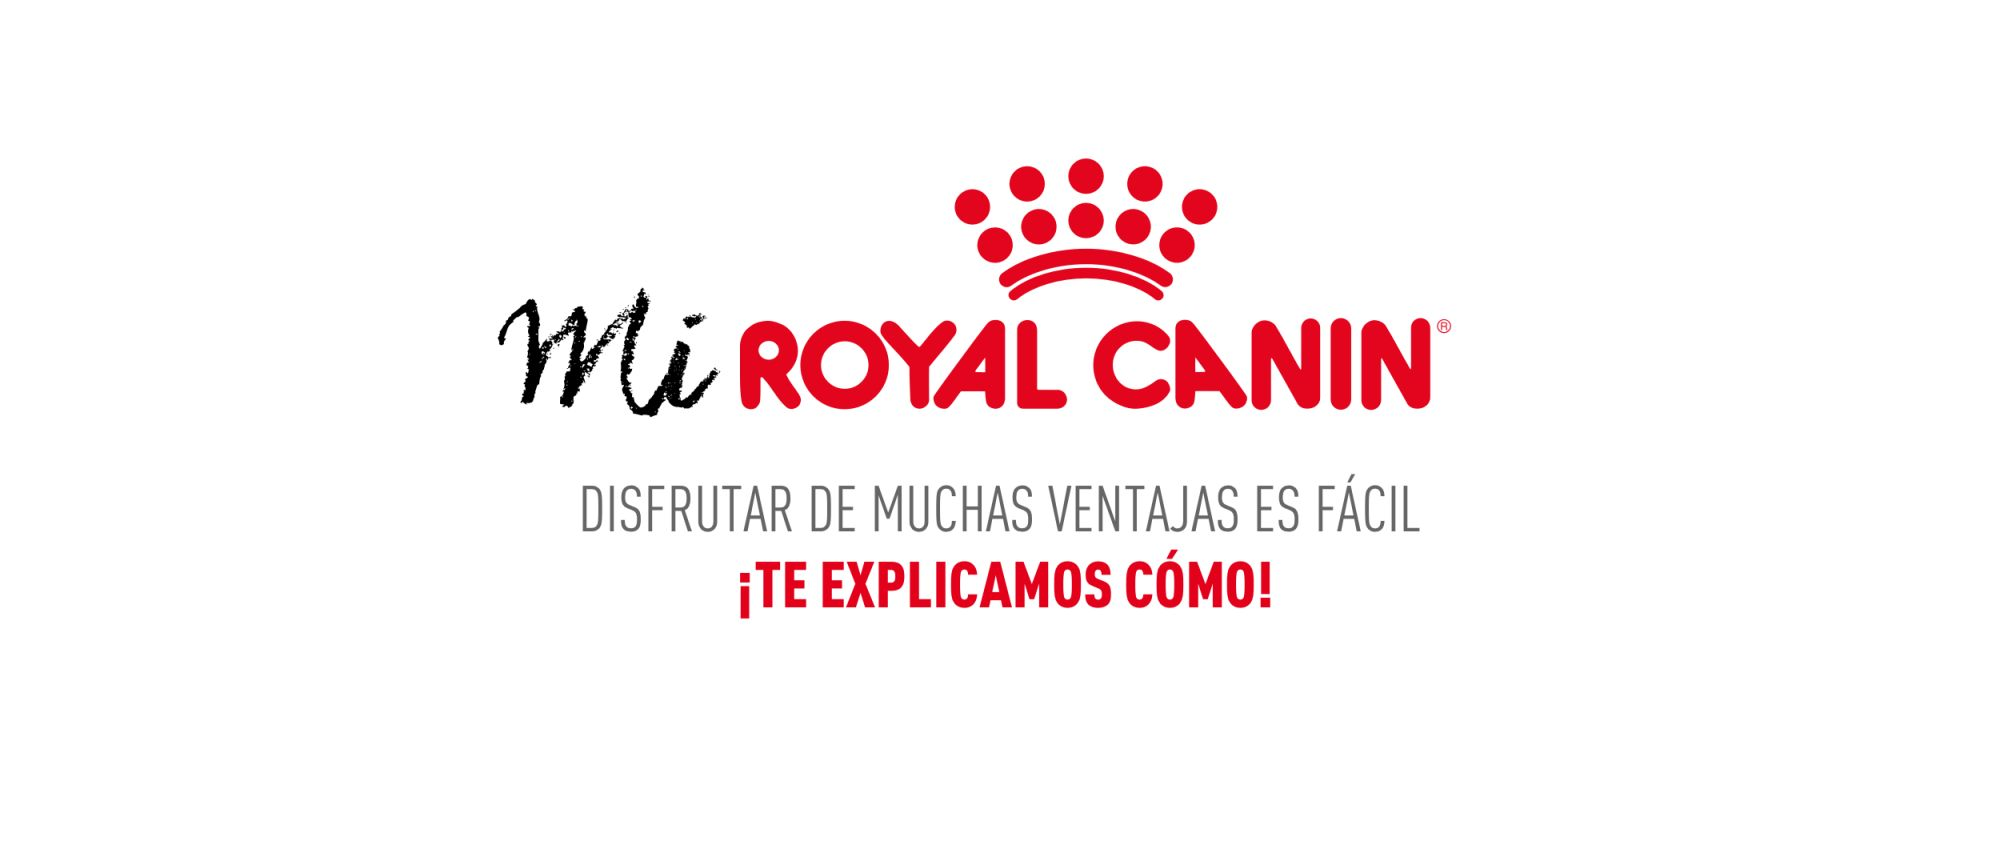 Mi Royal Canin, el programa de fidelización de Royal ...